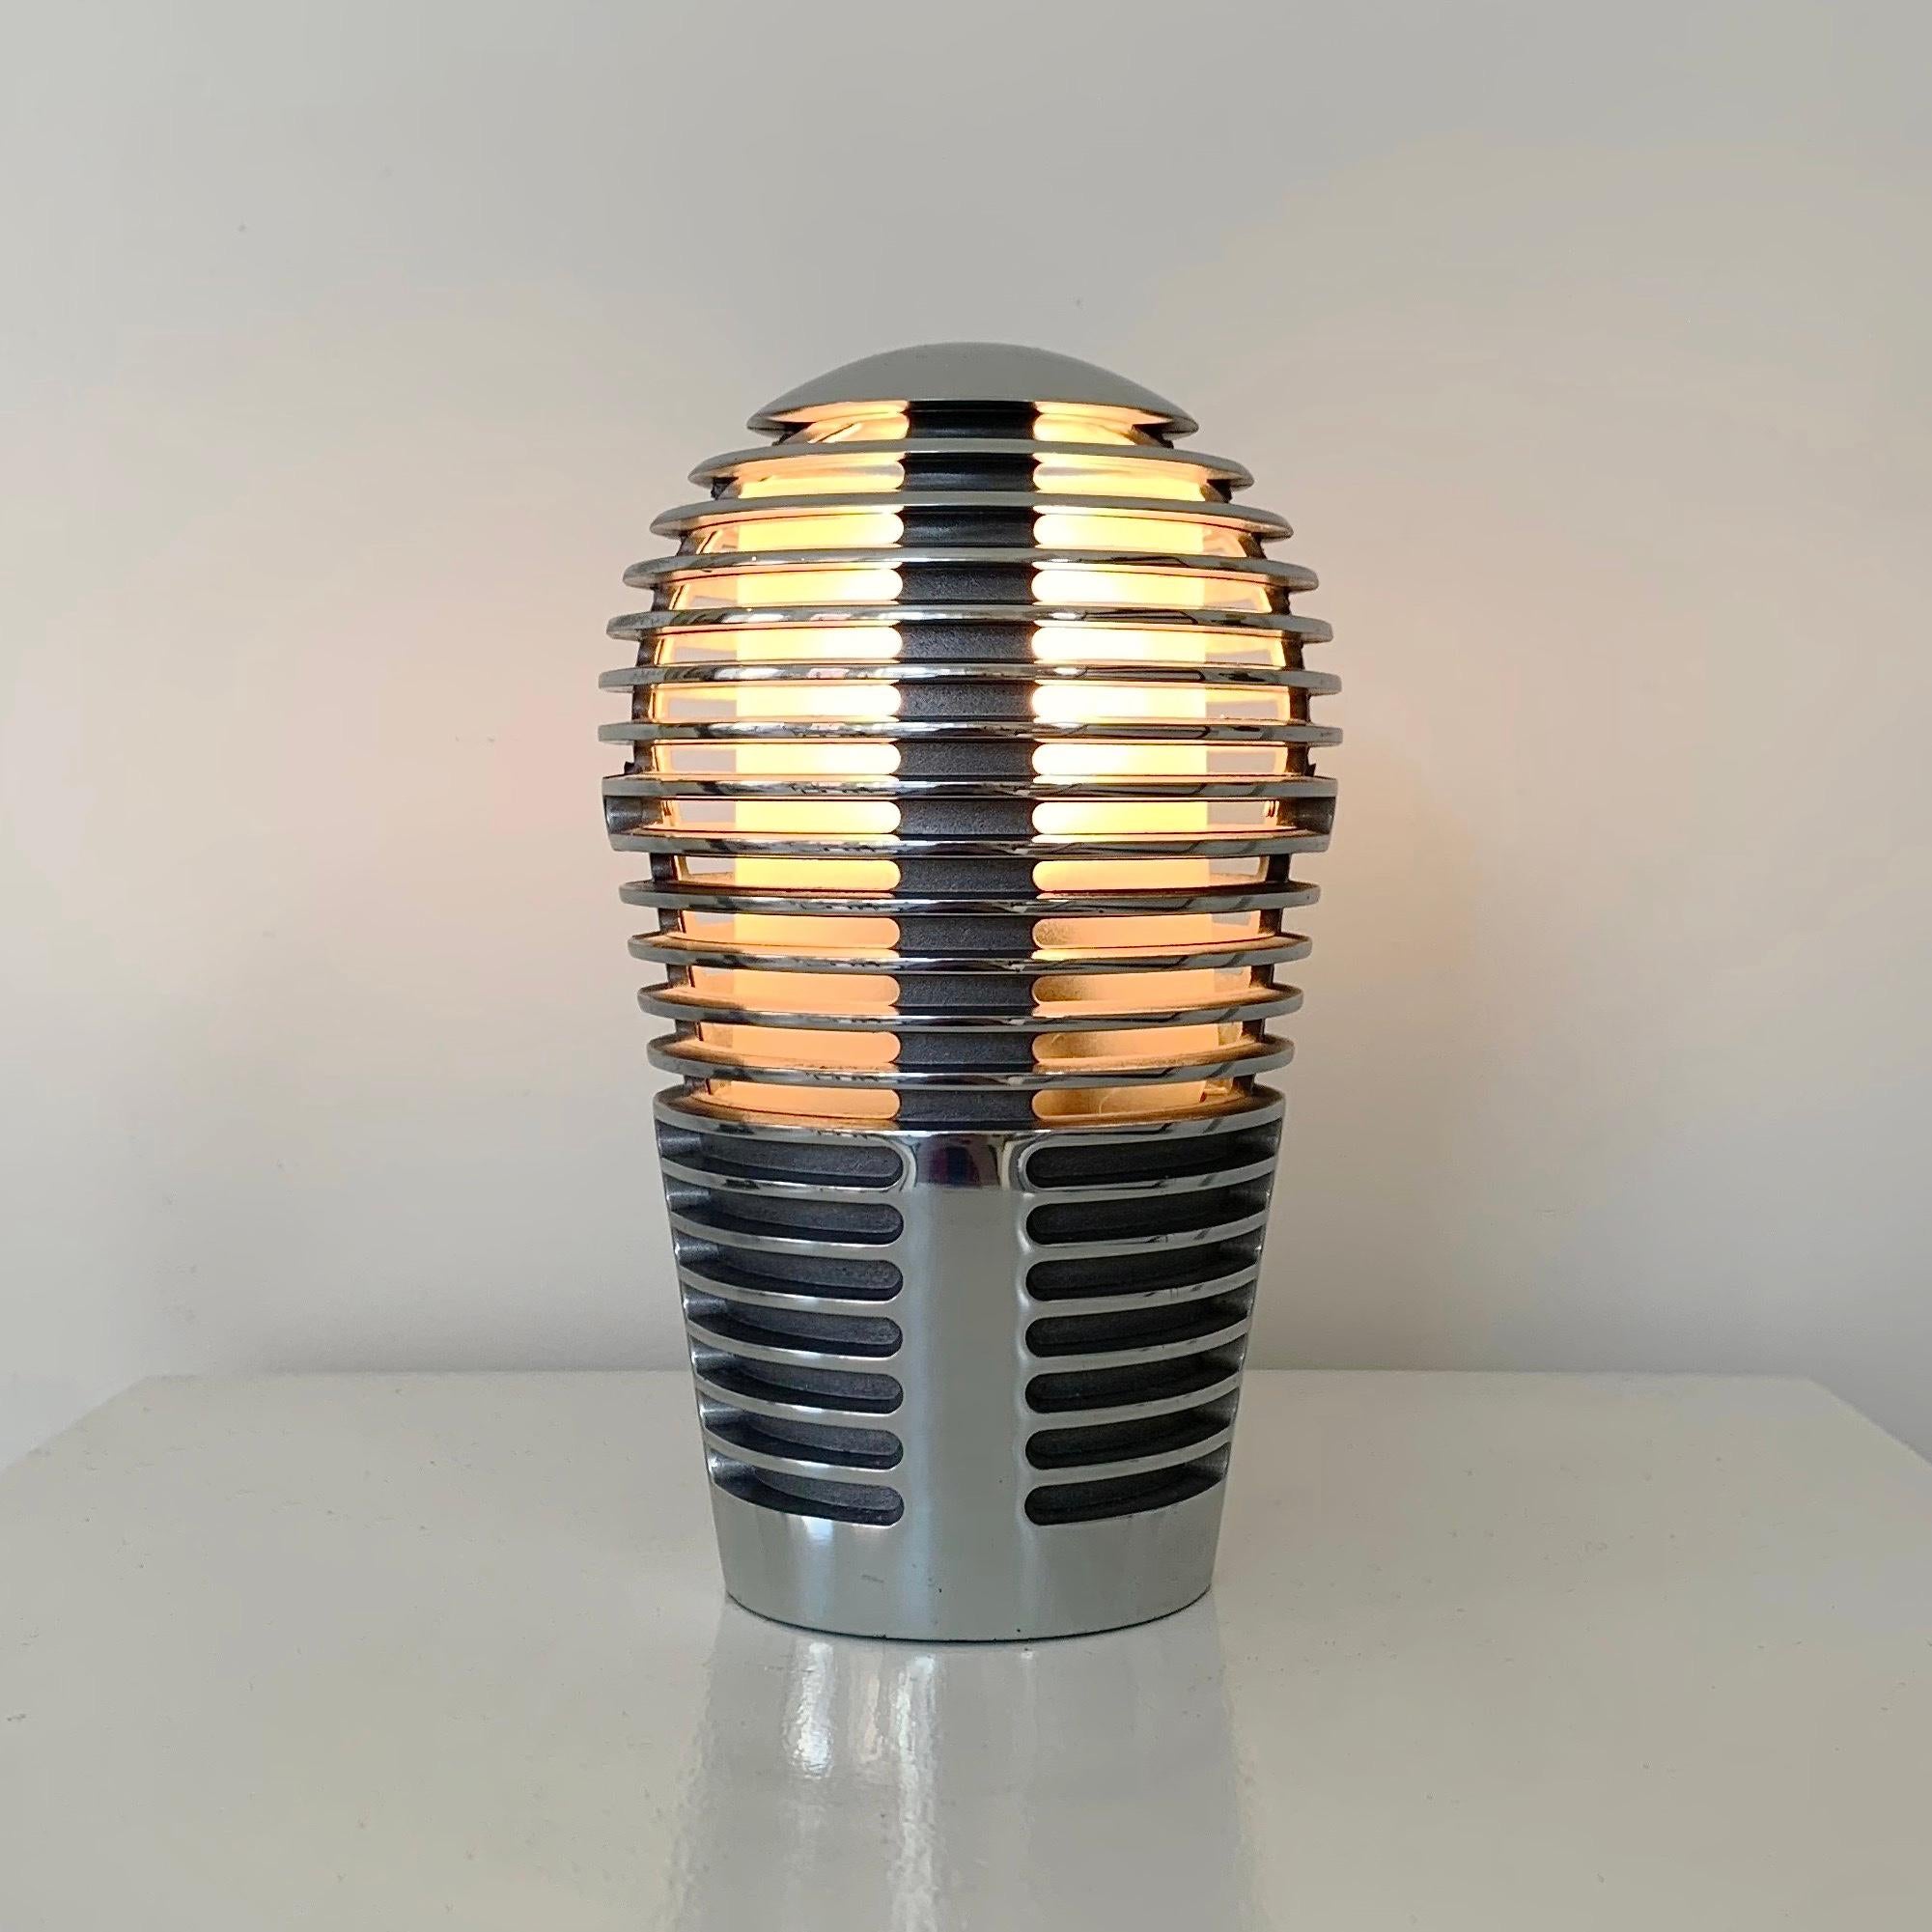 Sergi & Oscar Devesa Lampe de table modèle Zen pour Metalarte, 1984, Espagne.
Conique radiale ronde nervurée en métal chromé, écran intérieur en polycarbonate.
Dimensions : 17 cm de hauteur, 11 cm de diamètre : 17 cm de hauteur, 11 cm de